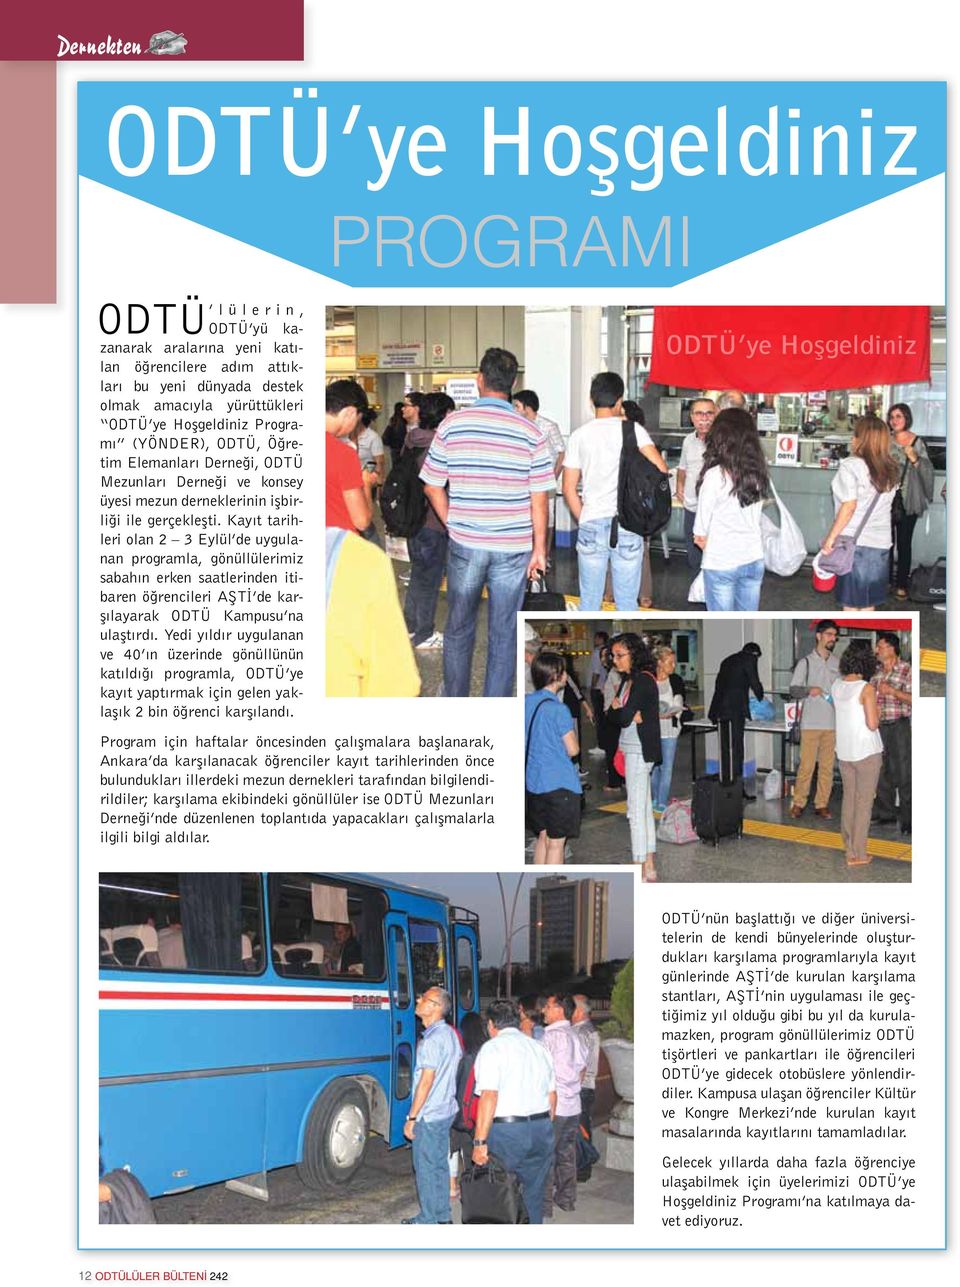 Kayıt tarihleri olan 2 3 Eylül de uygulanan programla, gönüllülerimiz sabahın erken saatlerinden itibaren öğrencileri AŞTİ de karşılayarak ODTÜ Kampusu na ulaştırdı.